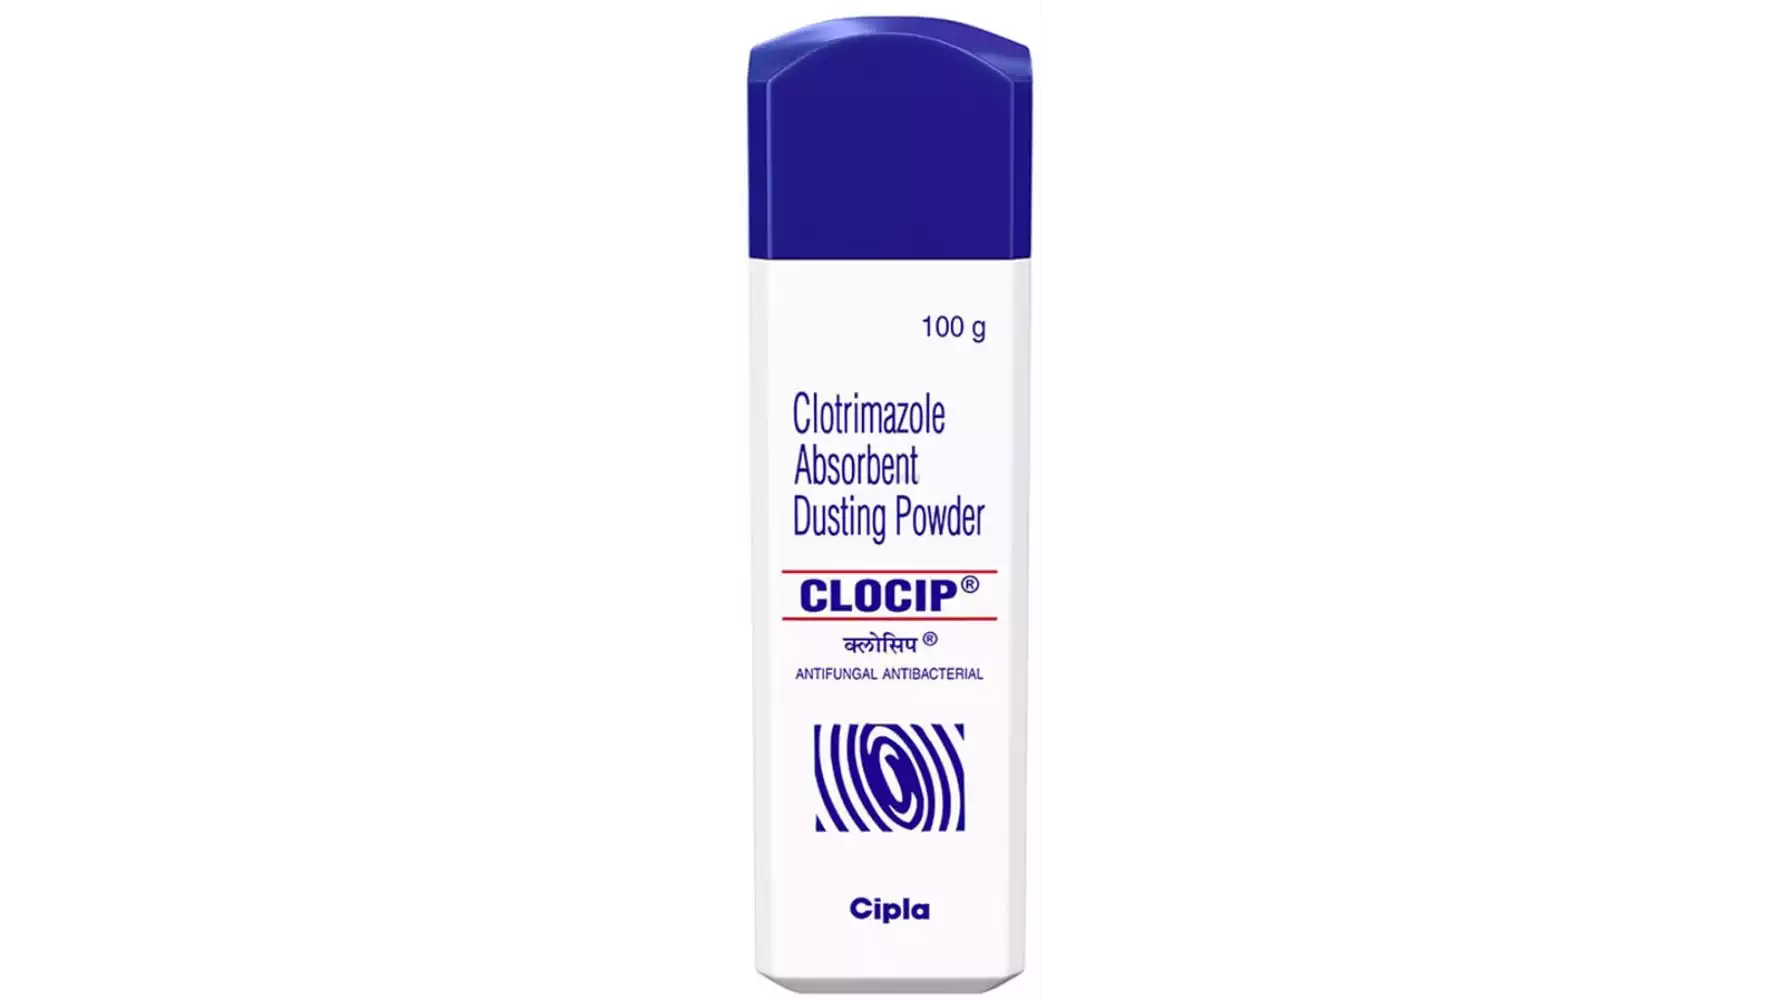 Clocip Dusting Powder (100g)